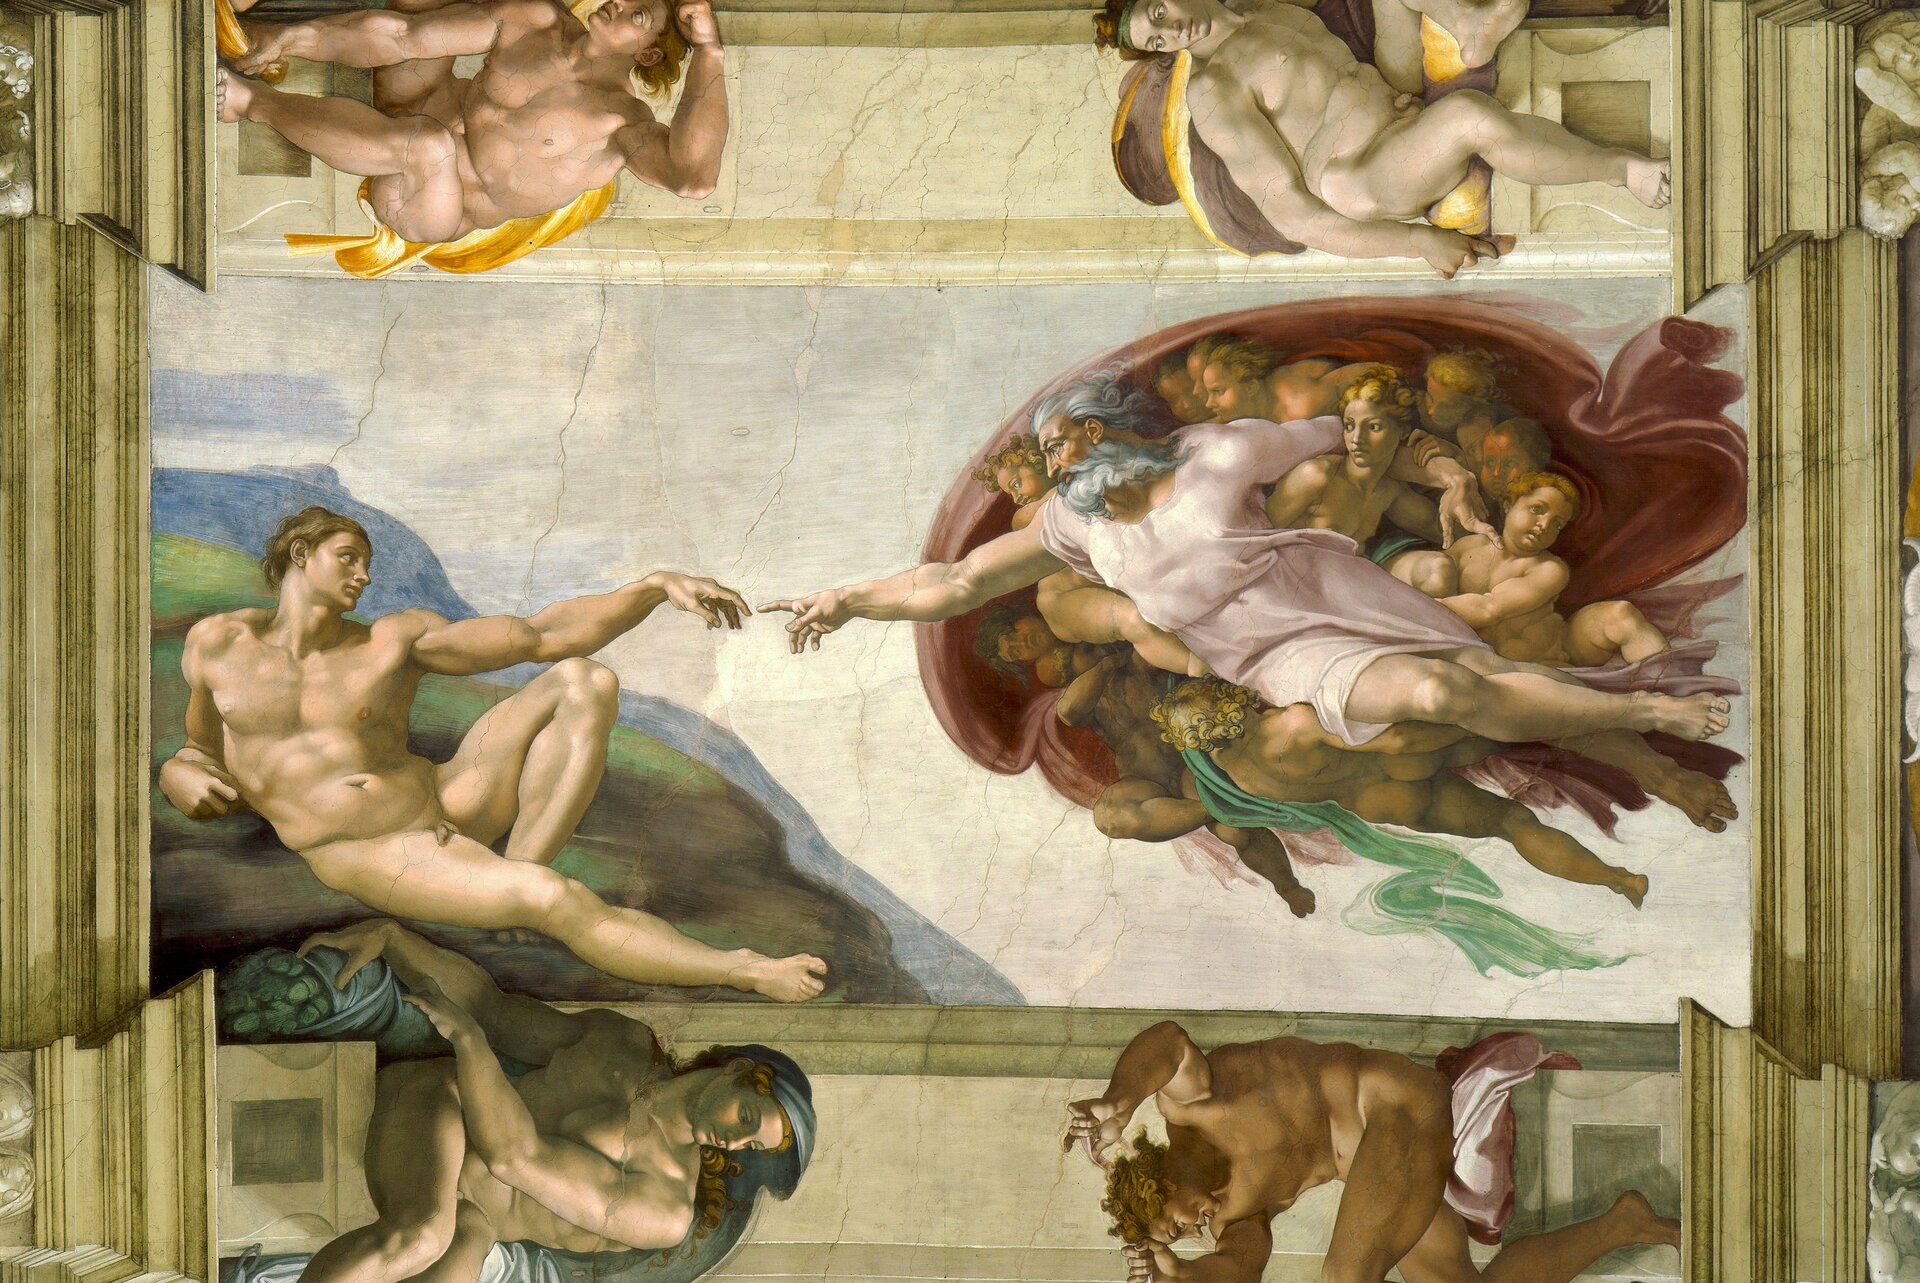 Zdjęcie przedstawia najsłynniejszą scenę z fresku Michała Anioła, wykonanego na sklepieniu Kaplicy Sykstyńskiej w Watykanie –  stworzenie Adama. Po prawej stronie dzieła widać unoszącego się w przestworzach Boga, który został ukazany jako dobrze zbudowany, emanujący siłą i energią siwowłosy i siwobrody starzec w białej szacie i czerwonym płaszczu, otoczony tłumem cherubinów, czyli aniołów. Stwórca wyciąga do Adama prawą rękę. Po lewej stronie fresku widać spoczywającego wśród zieleni rajskiego ogrodu nagiego Adama, umięśnionego i proporcjonalnie zbudowanego młodego mężczyznę, który z kolei wyciąga lewą rękę w stronę swego Stwórcy. Palec Boga i palec Adama są blisko siebie – na fresku ukazano moment, gdy Stwórca przekazuje pierwszemu człowiekowi iskrę życia. Bóg spogląda na Adama władczym wzrokiem, natomiast na twarzy Adama maluje się ufność i poddanie.